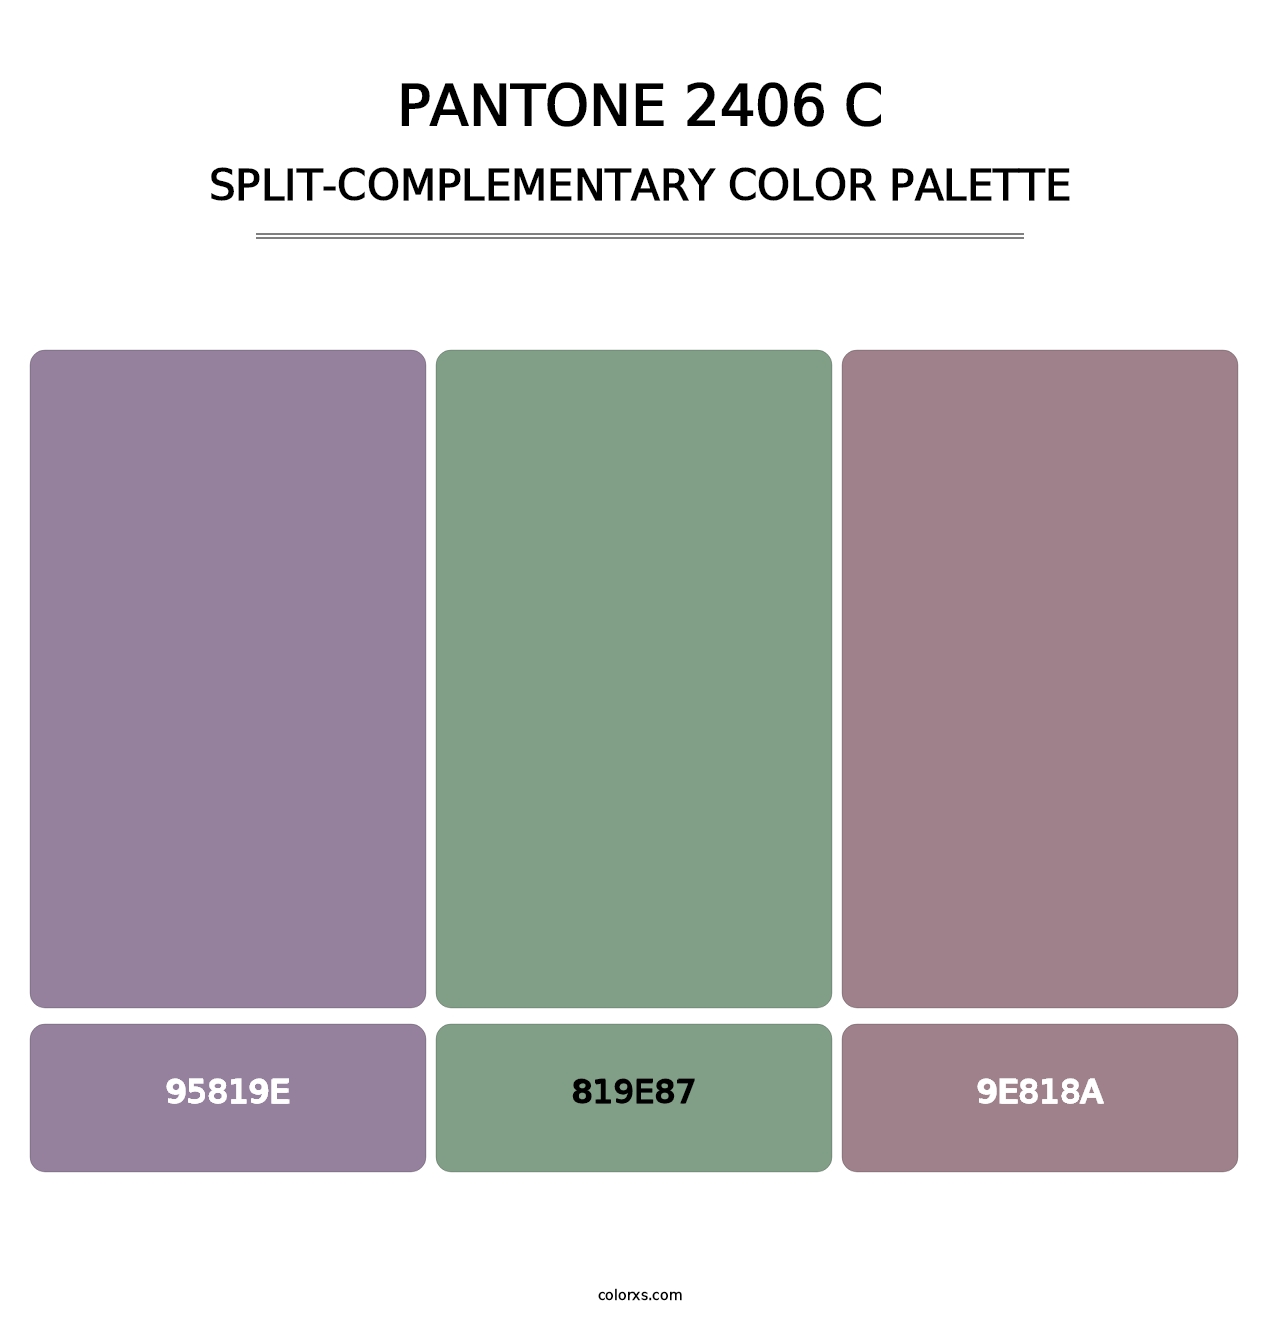 PANTONE 2406 C - Split-Complementary Color Palette